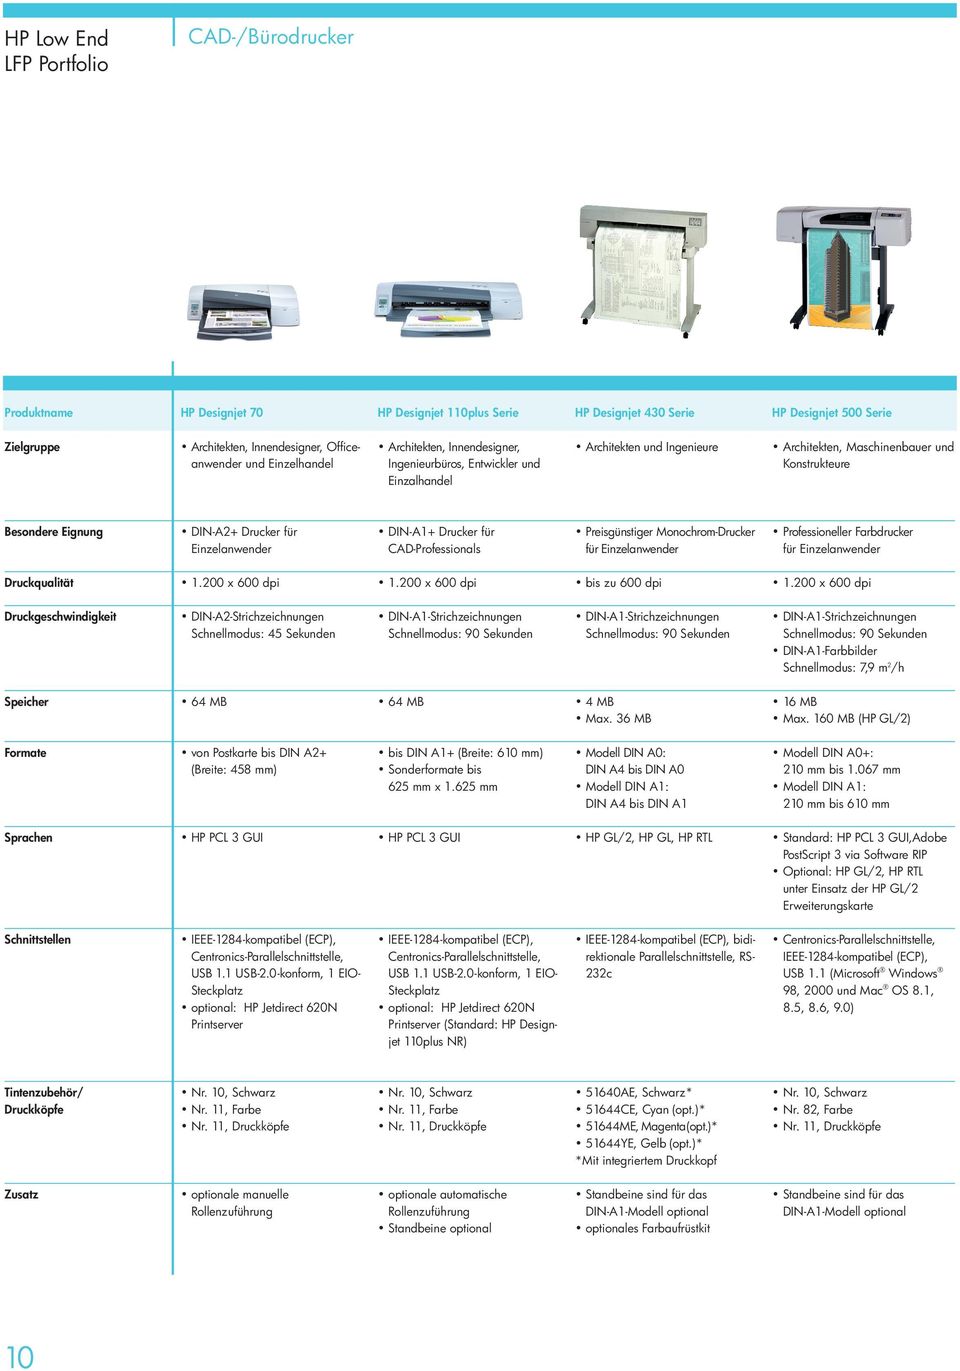 DIN-A1+ Drucker für CAD-Professionals Preisgünstiger Monochrom-Drucker für Einzelanwender Professioneller Farbdrucker für Einzelanwender Druckqualität 1.200 x 600 dpi 1.200 x 600 dpi bis zu 600 dpi 1.